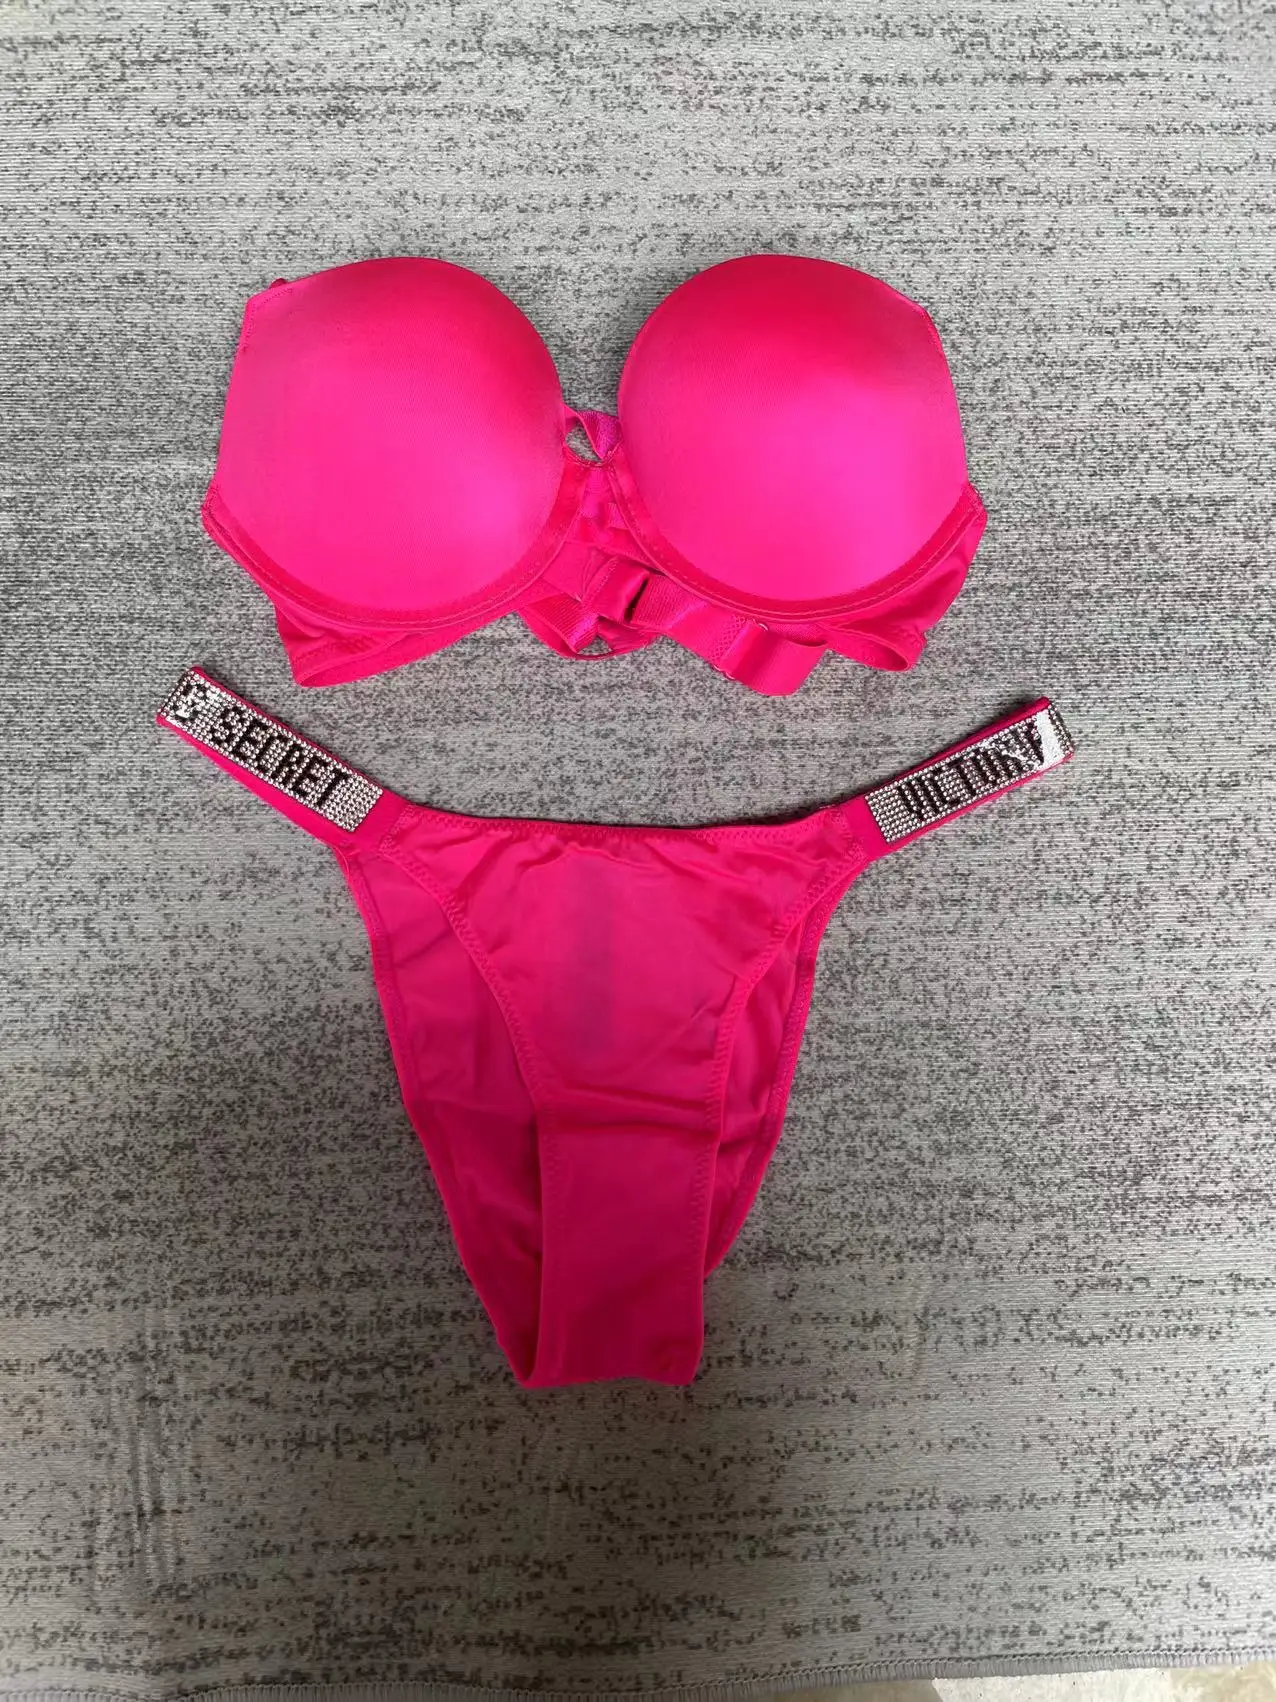 victoria's Secret pink pushup bra size 38B & Xl Panty Set Shine